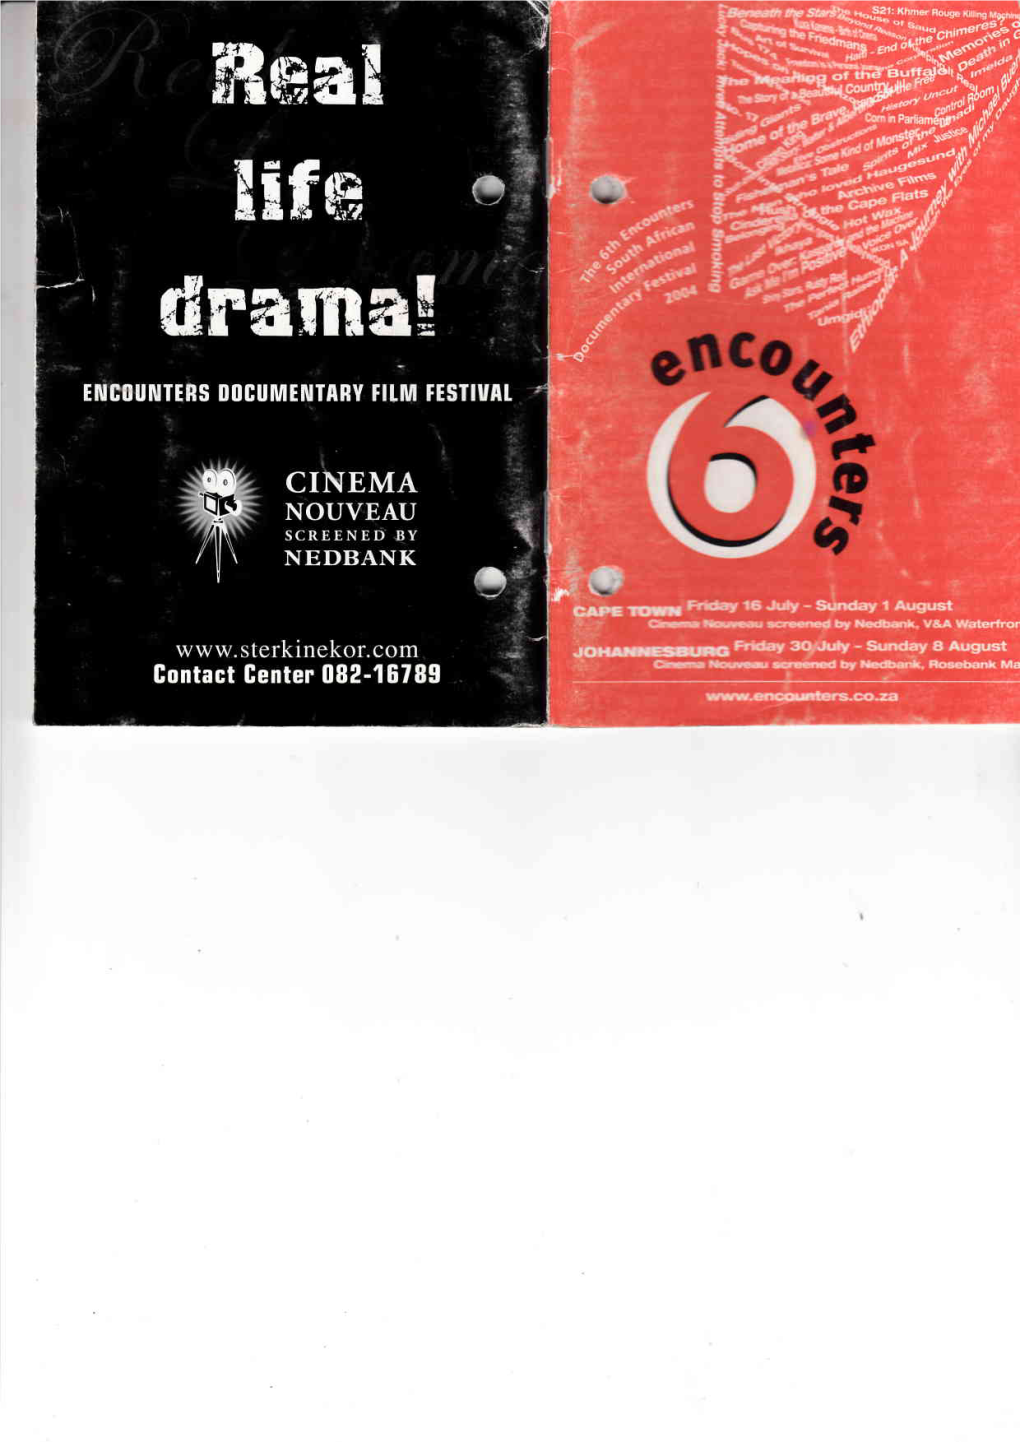 2004 Programme